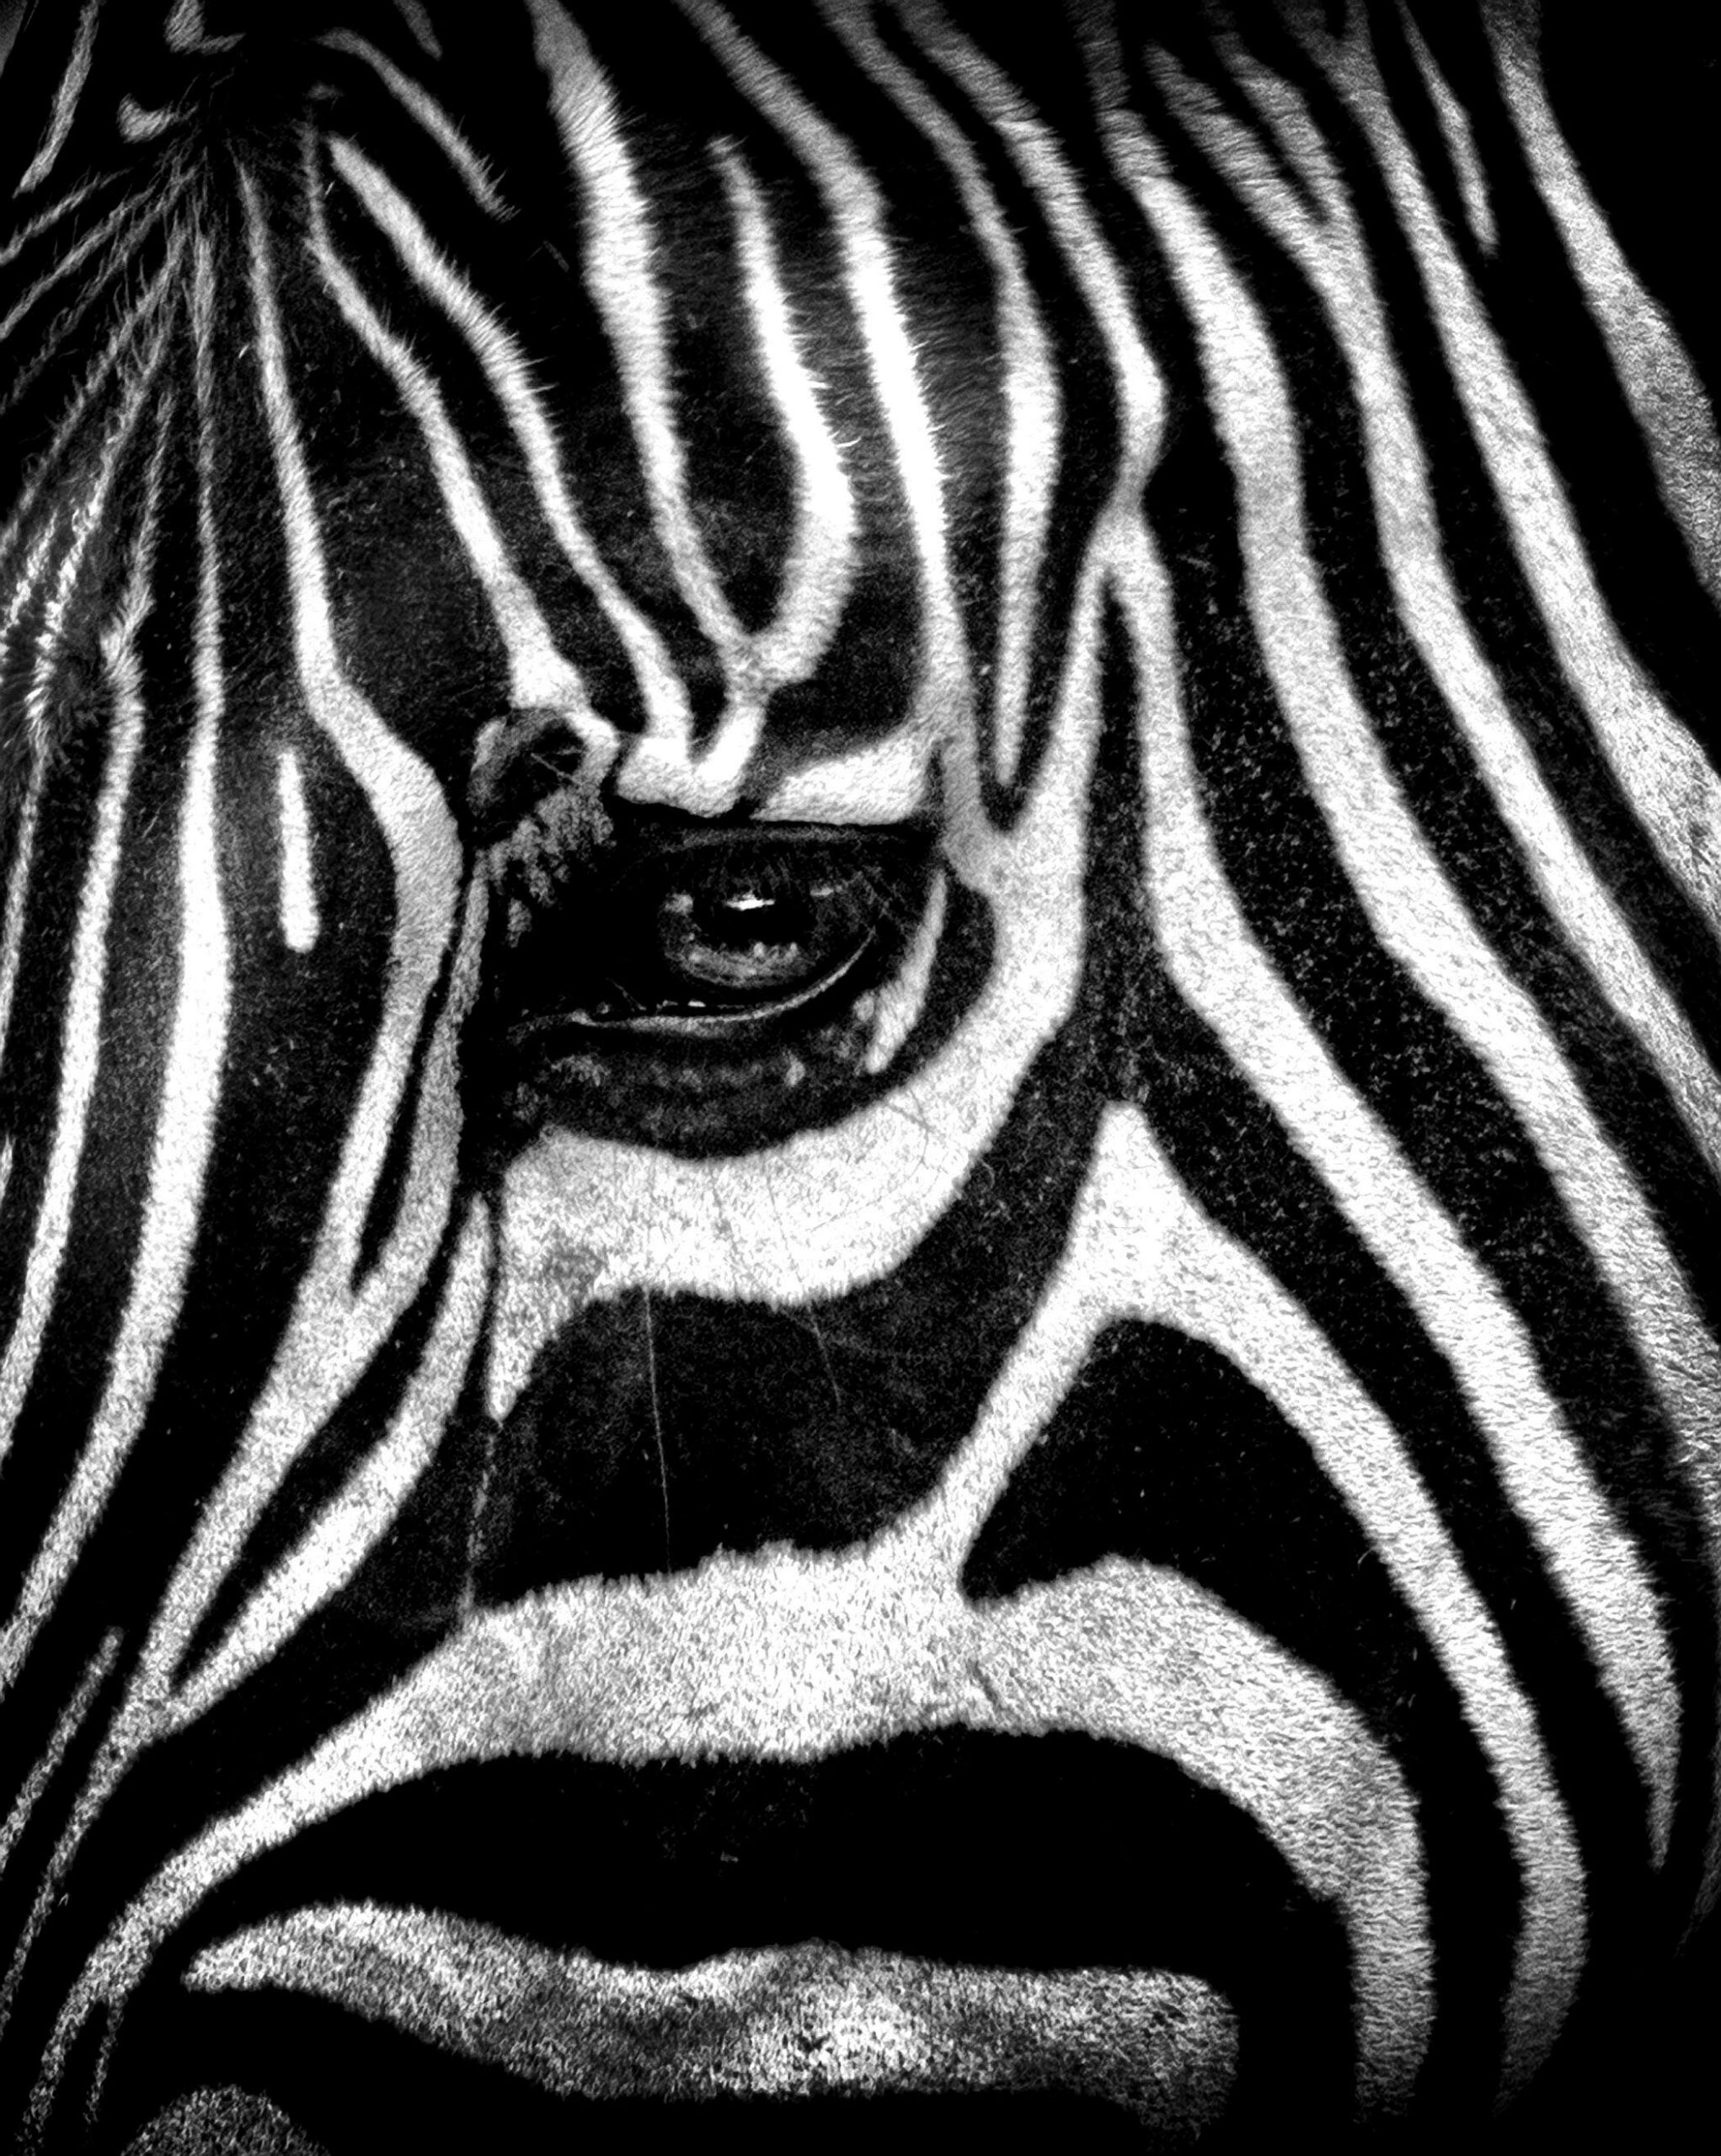 Zebra Providence